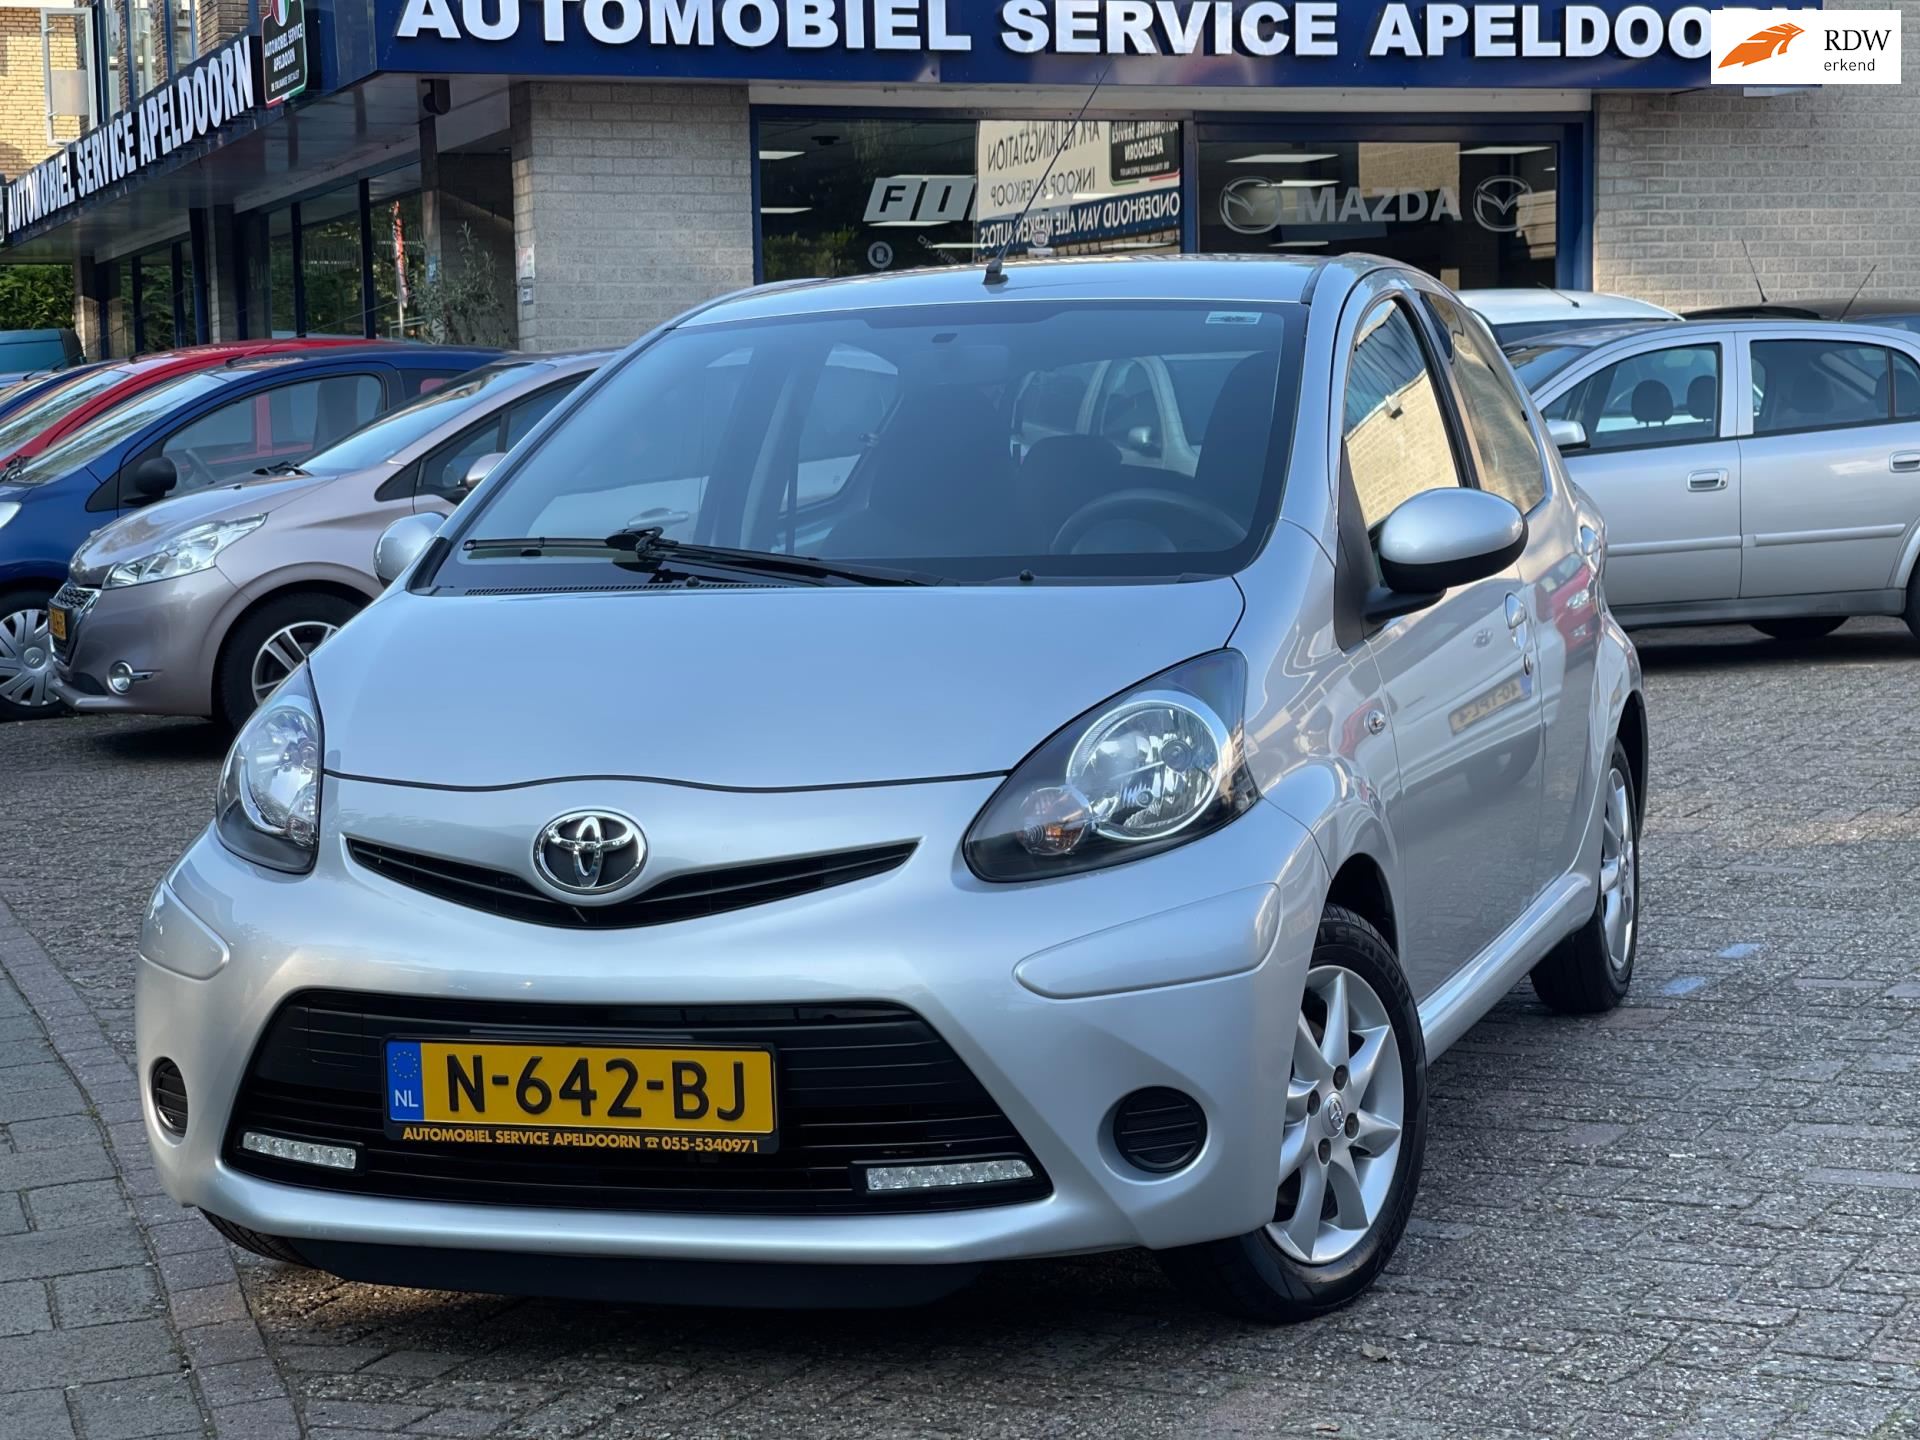 Toyota Aygo occasion - Automobiel Service Apeldoorn